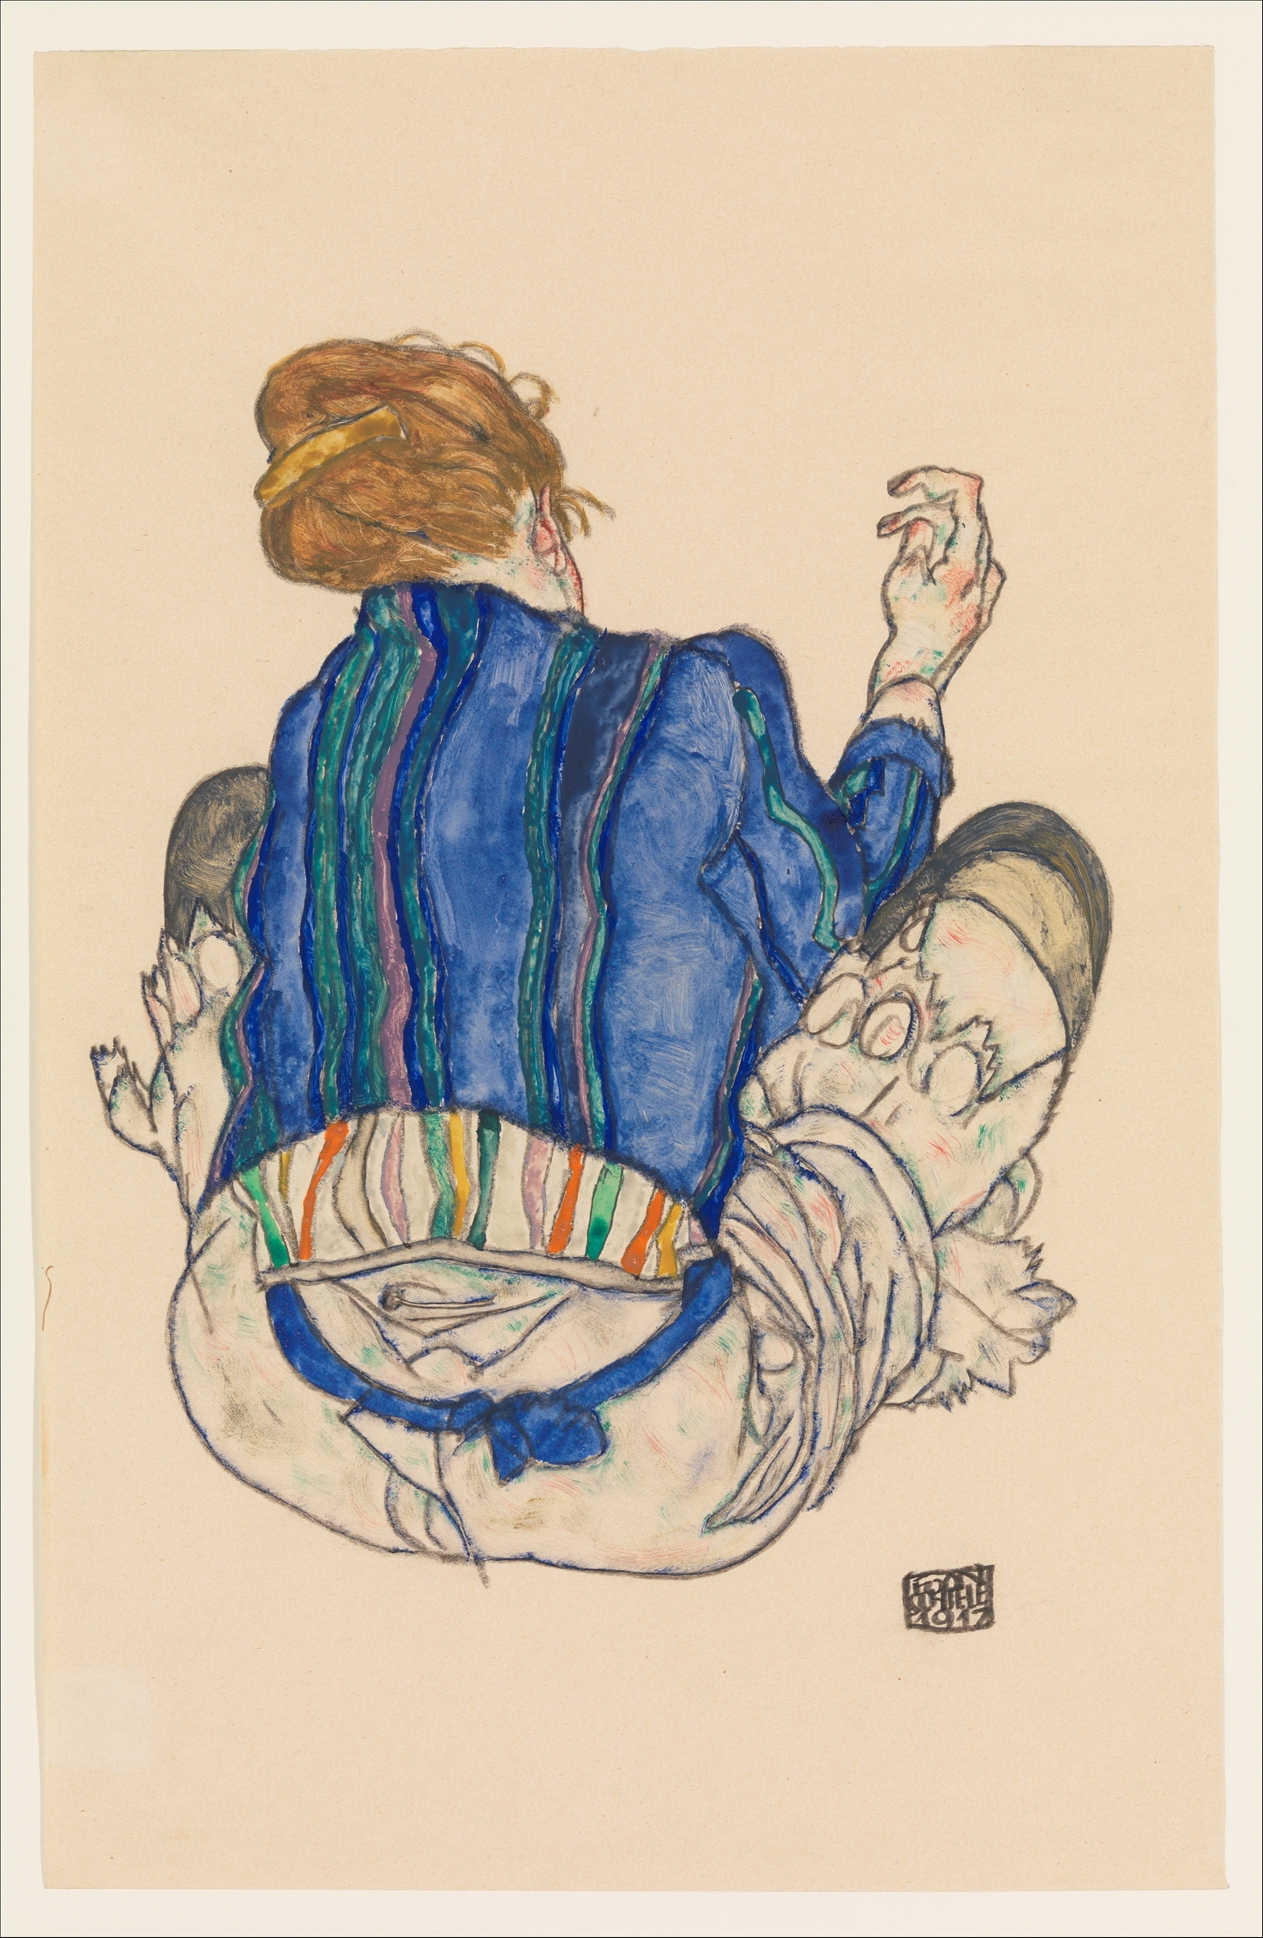 Sedící žena, pohled zezadu by Egon Schiele - 1917 - 46,4 x 29,8 cm 